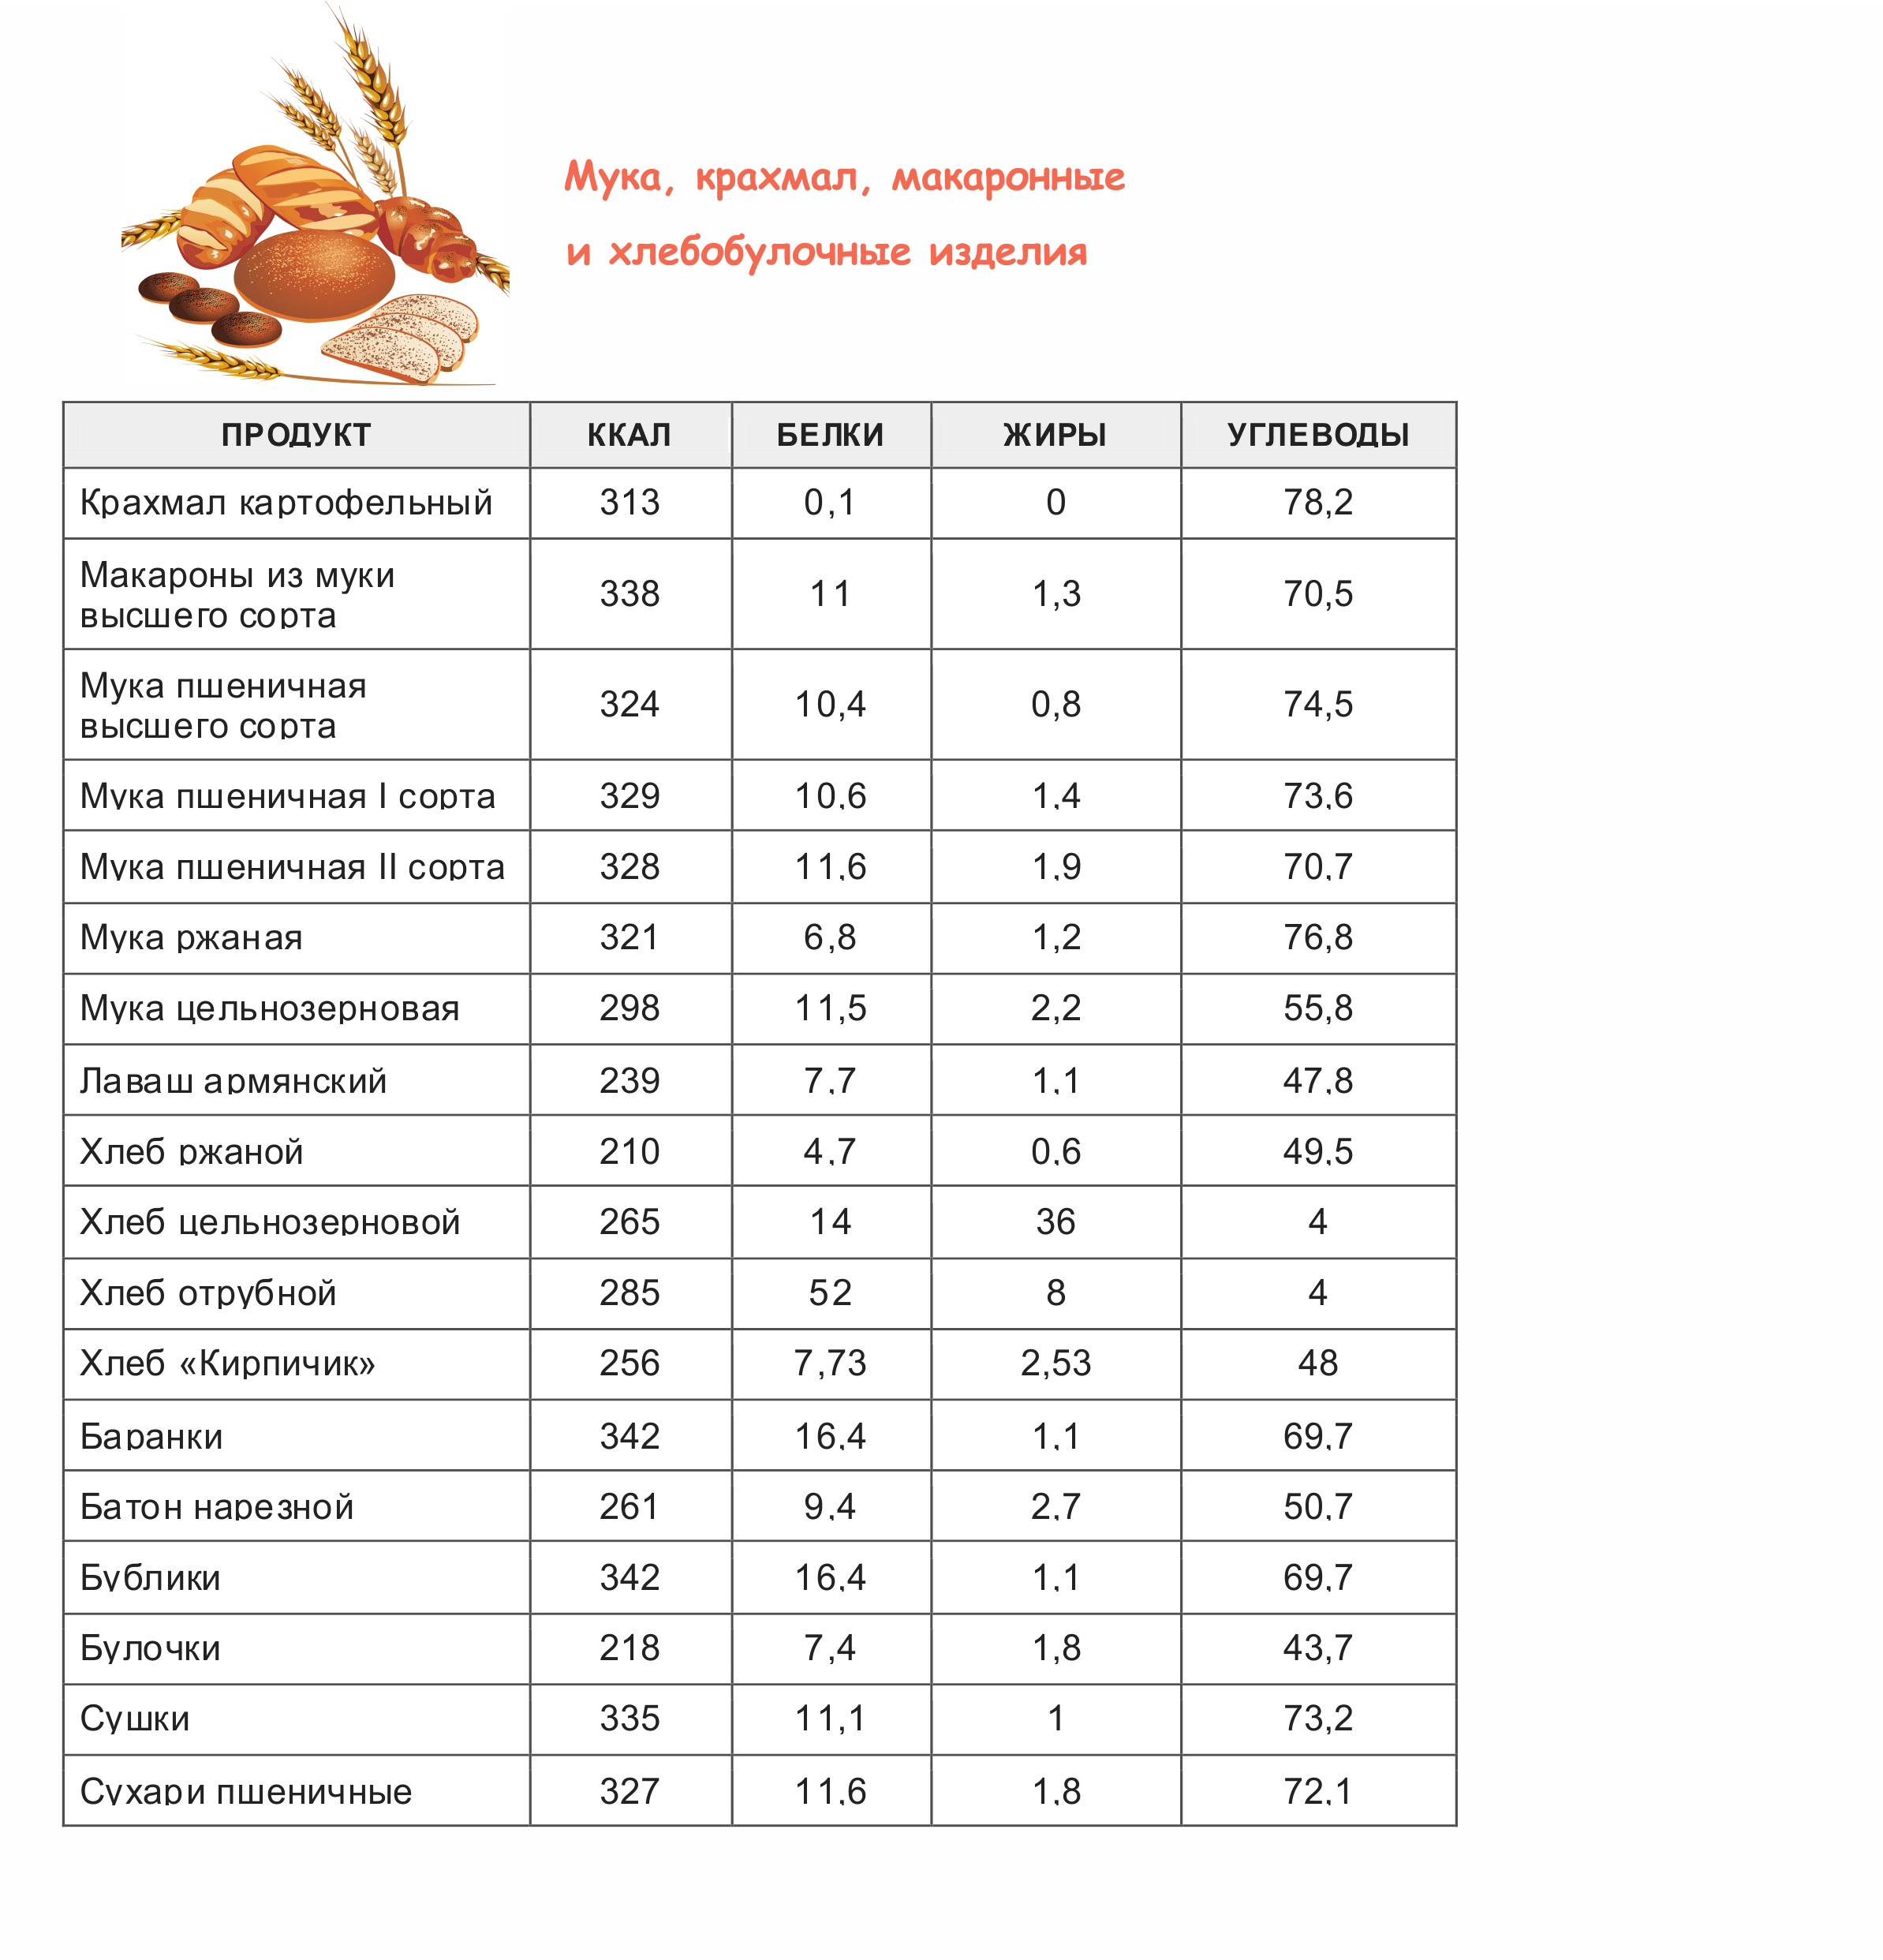 Таблица калорийности готовых блюд на 100 грамм полная версия